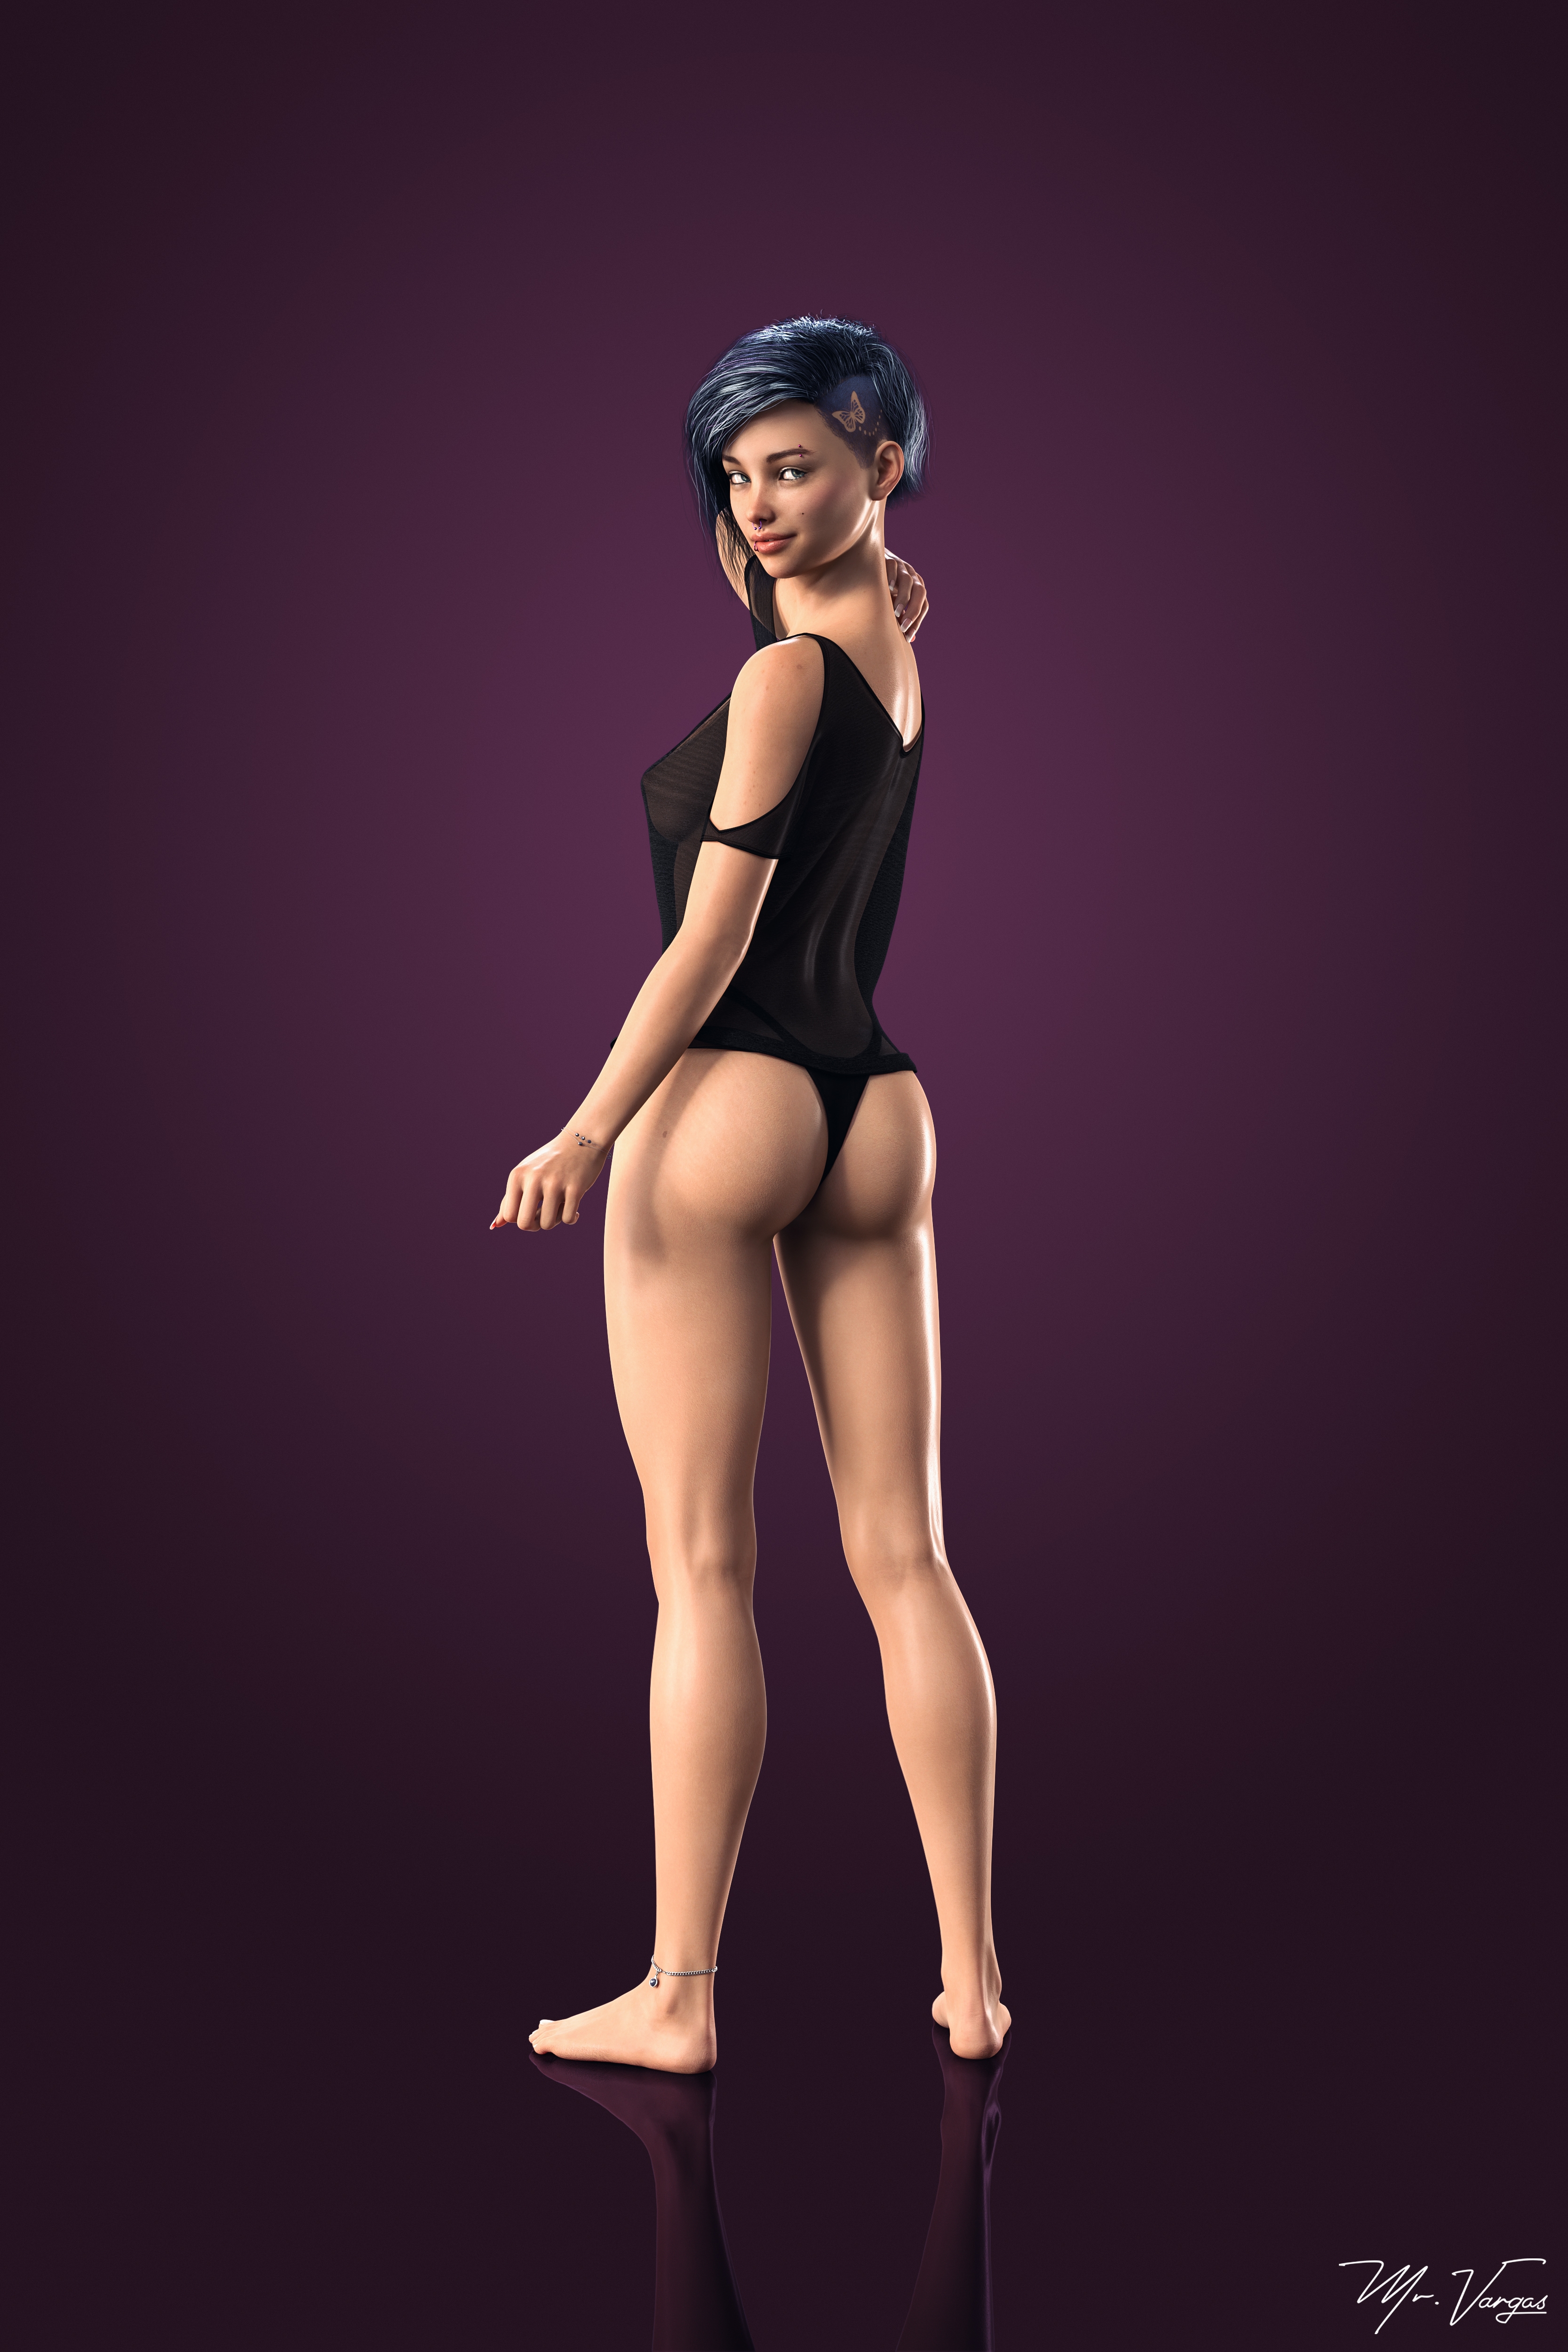 VN Fanart-5  3dnsfw Adult Games Fanart Original Character Small Tits Big Tits Milf Petite Big Ass Lesbian Bikini Party Dress Nude 4